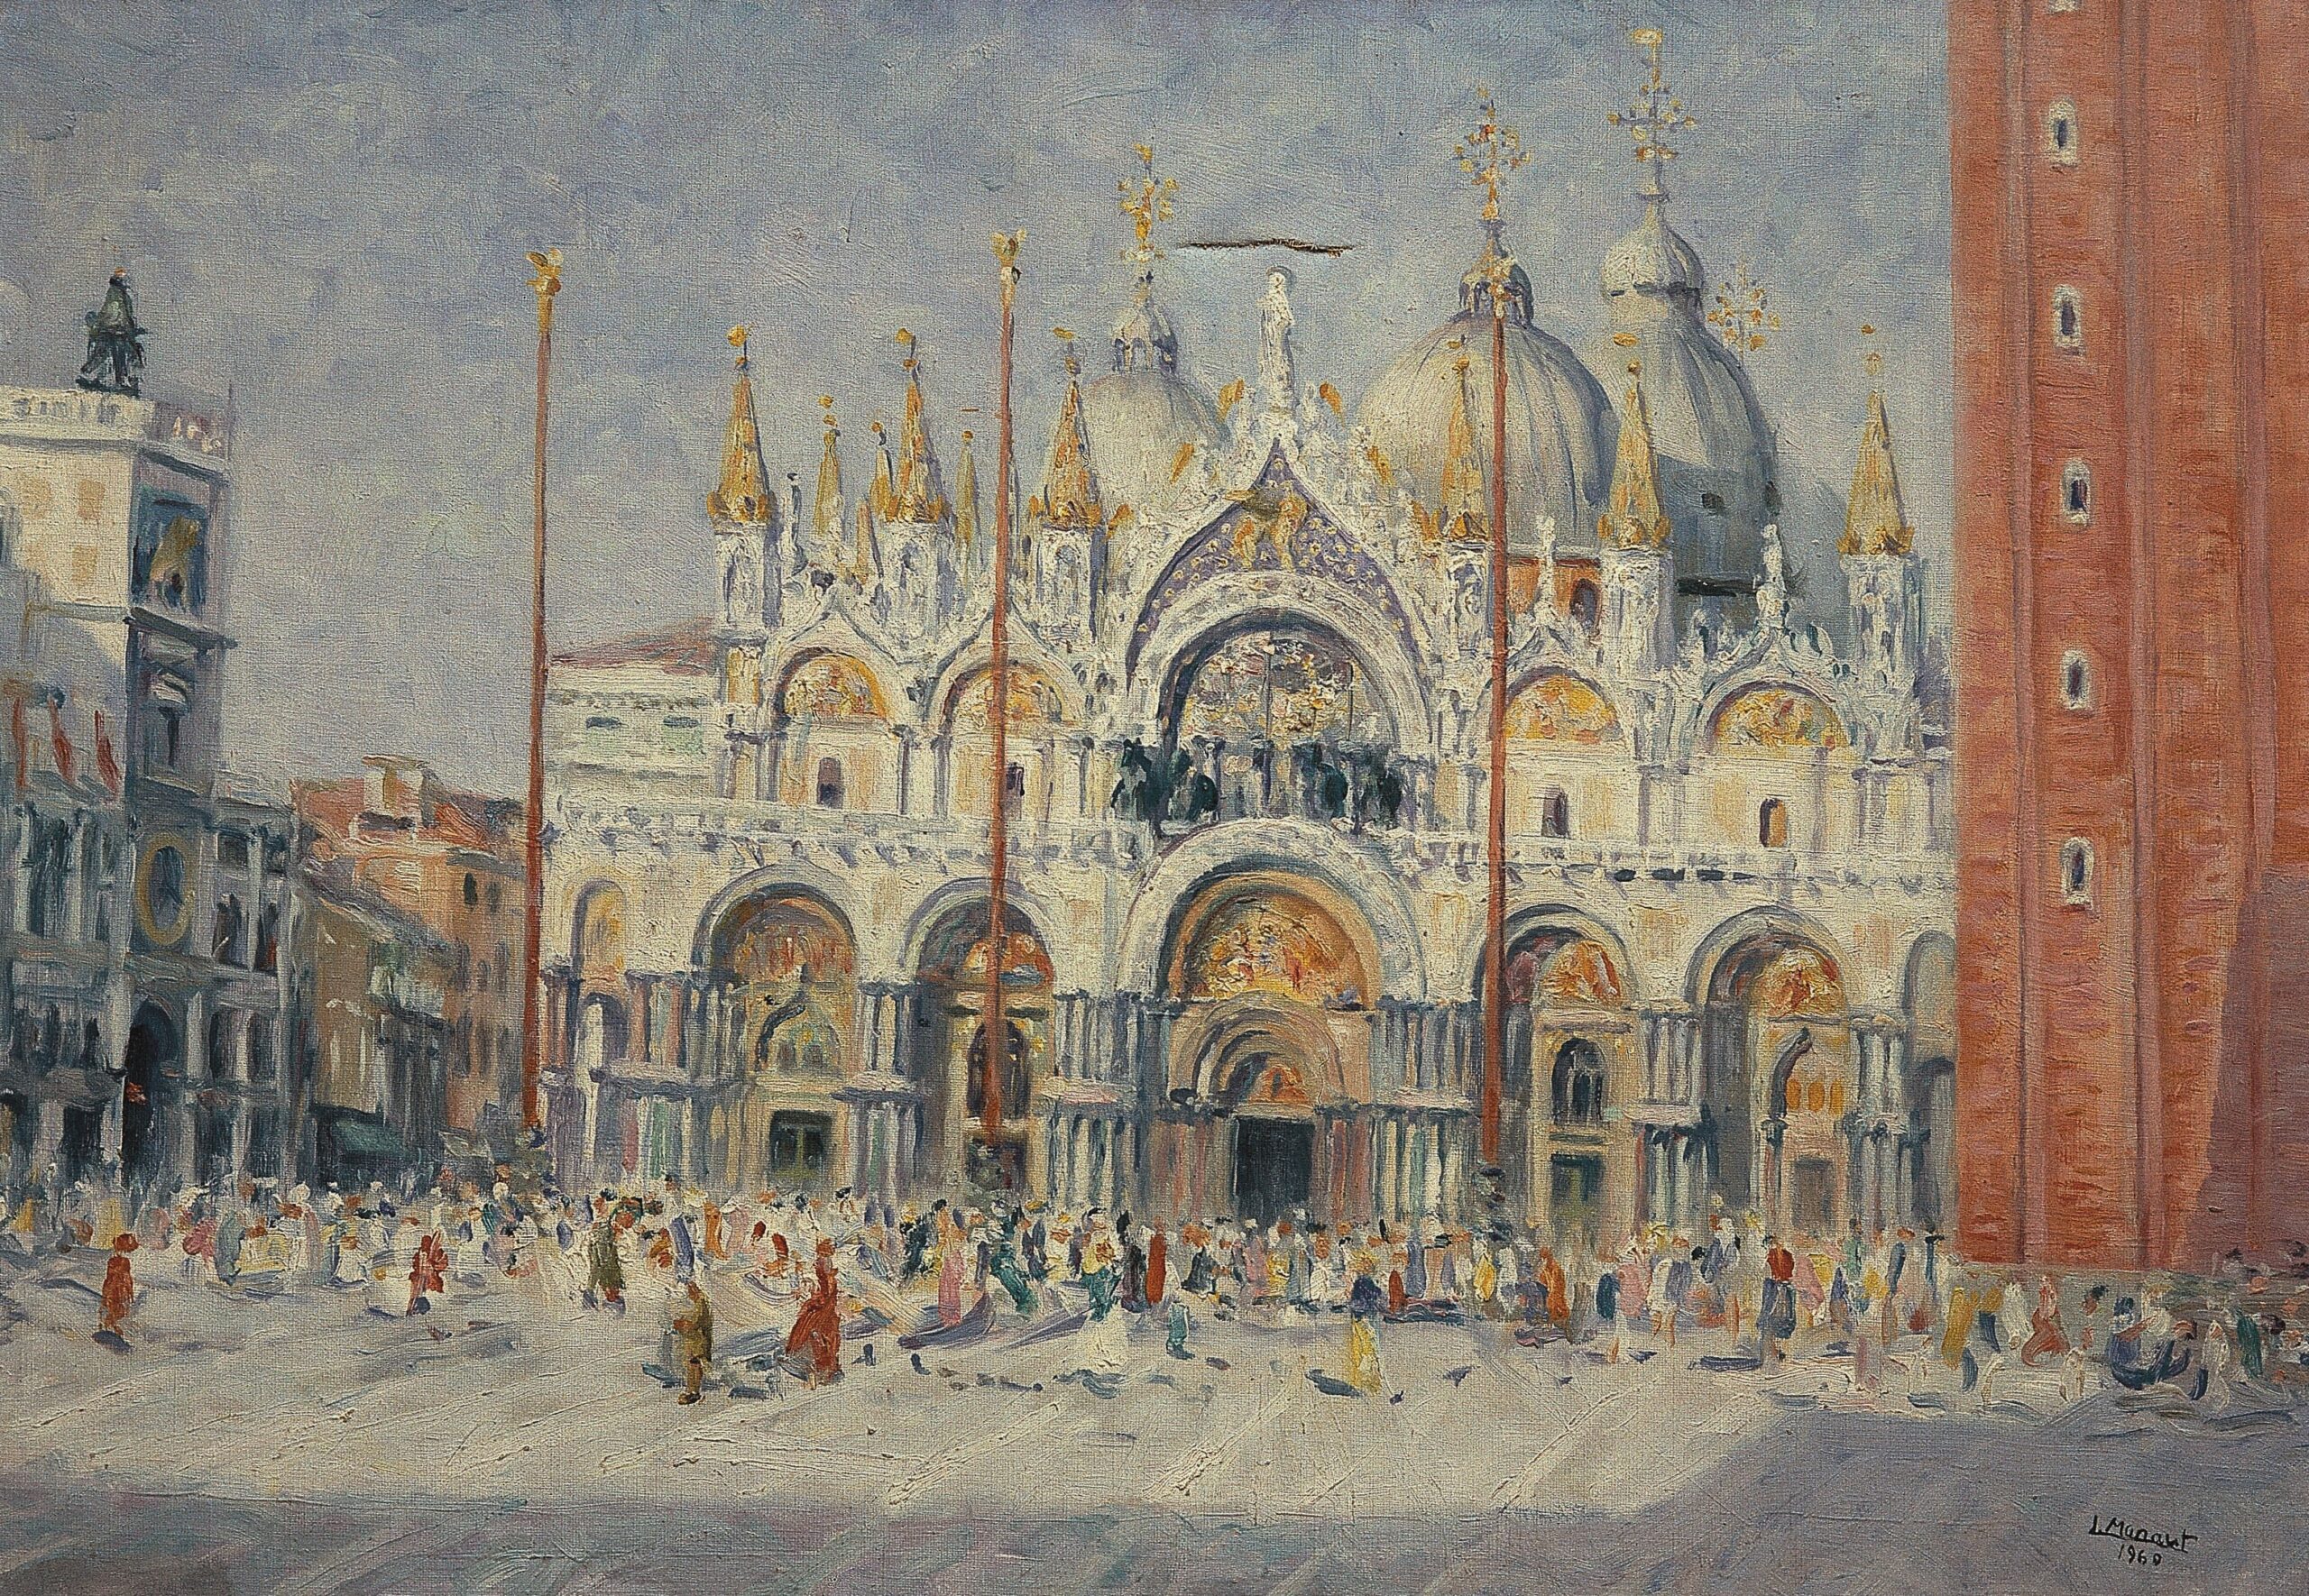 Pintura de José Manaut titulada Piazza San Marco, Venecia, 1960. Óleo sobre lienzo.